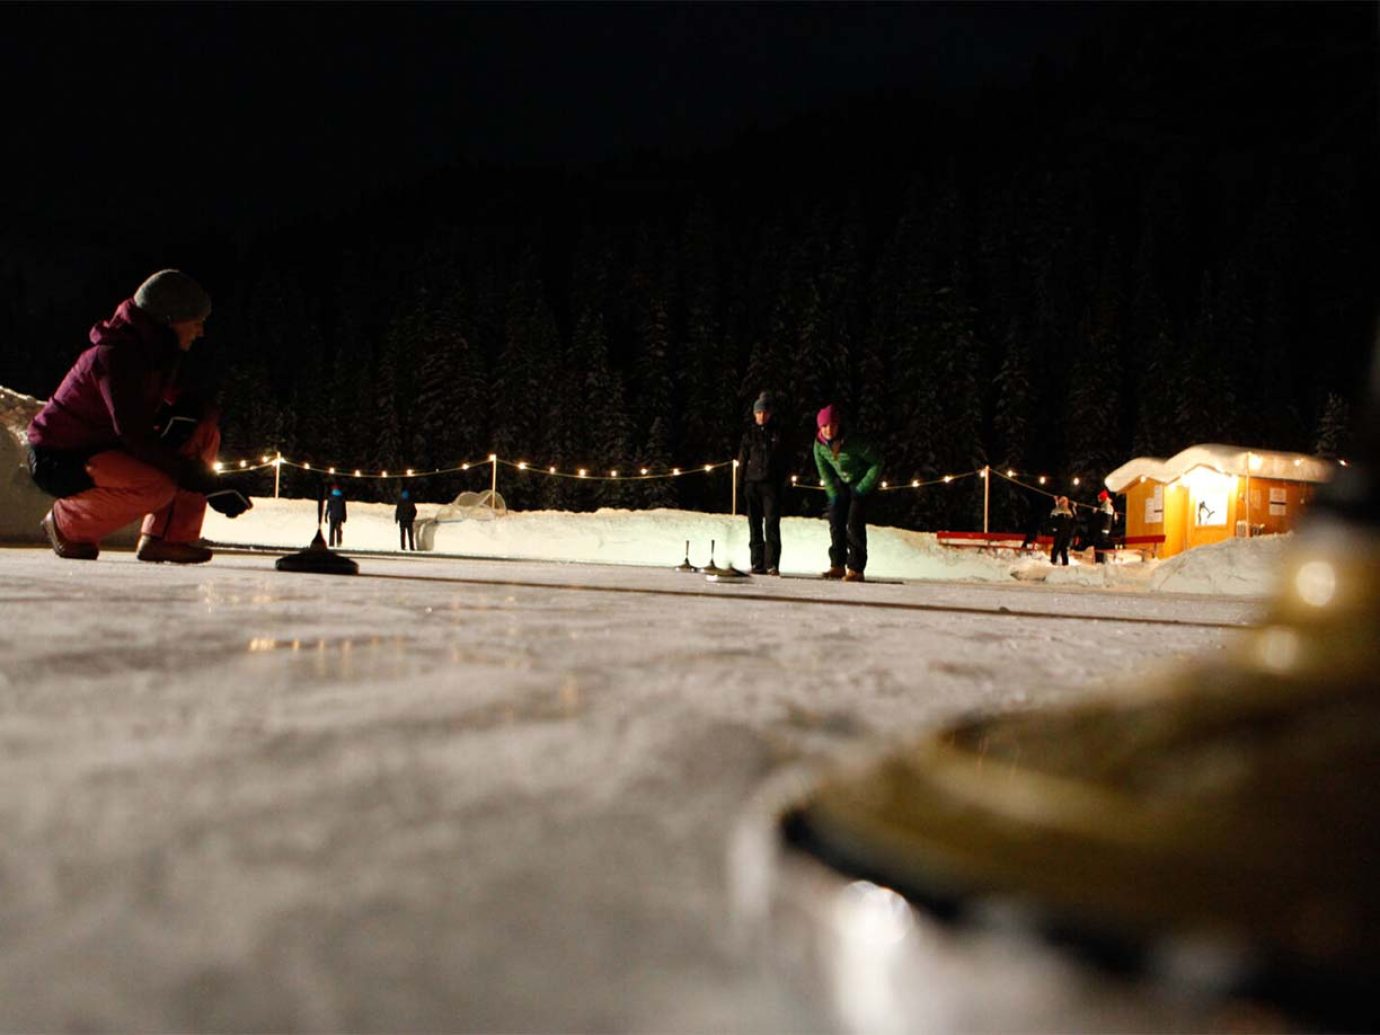 Menschen am Eisstockschiessen in Lech in der Nacht